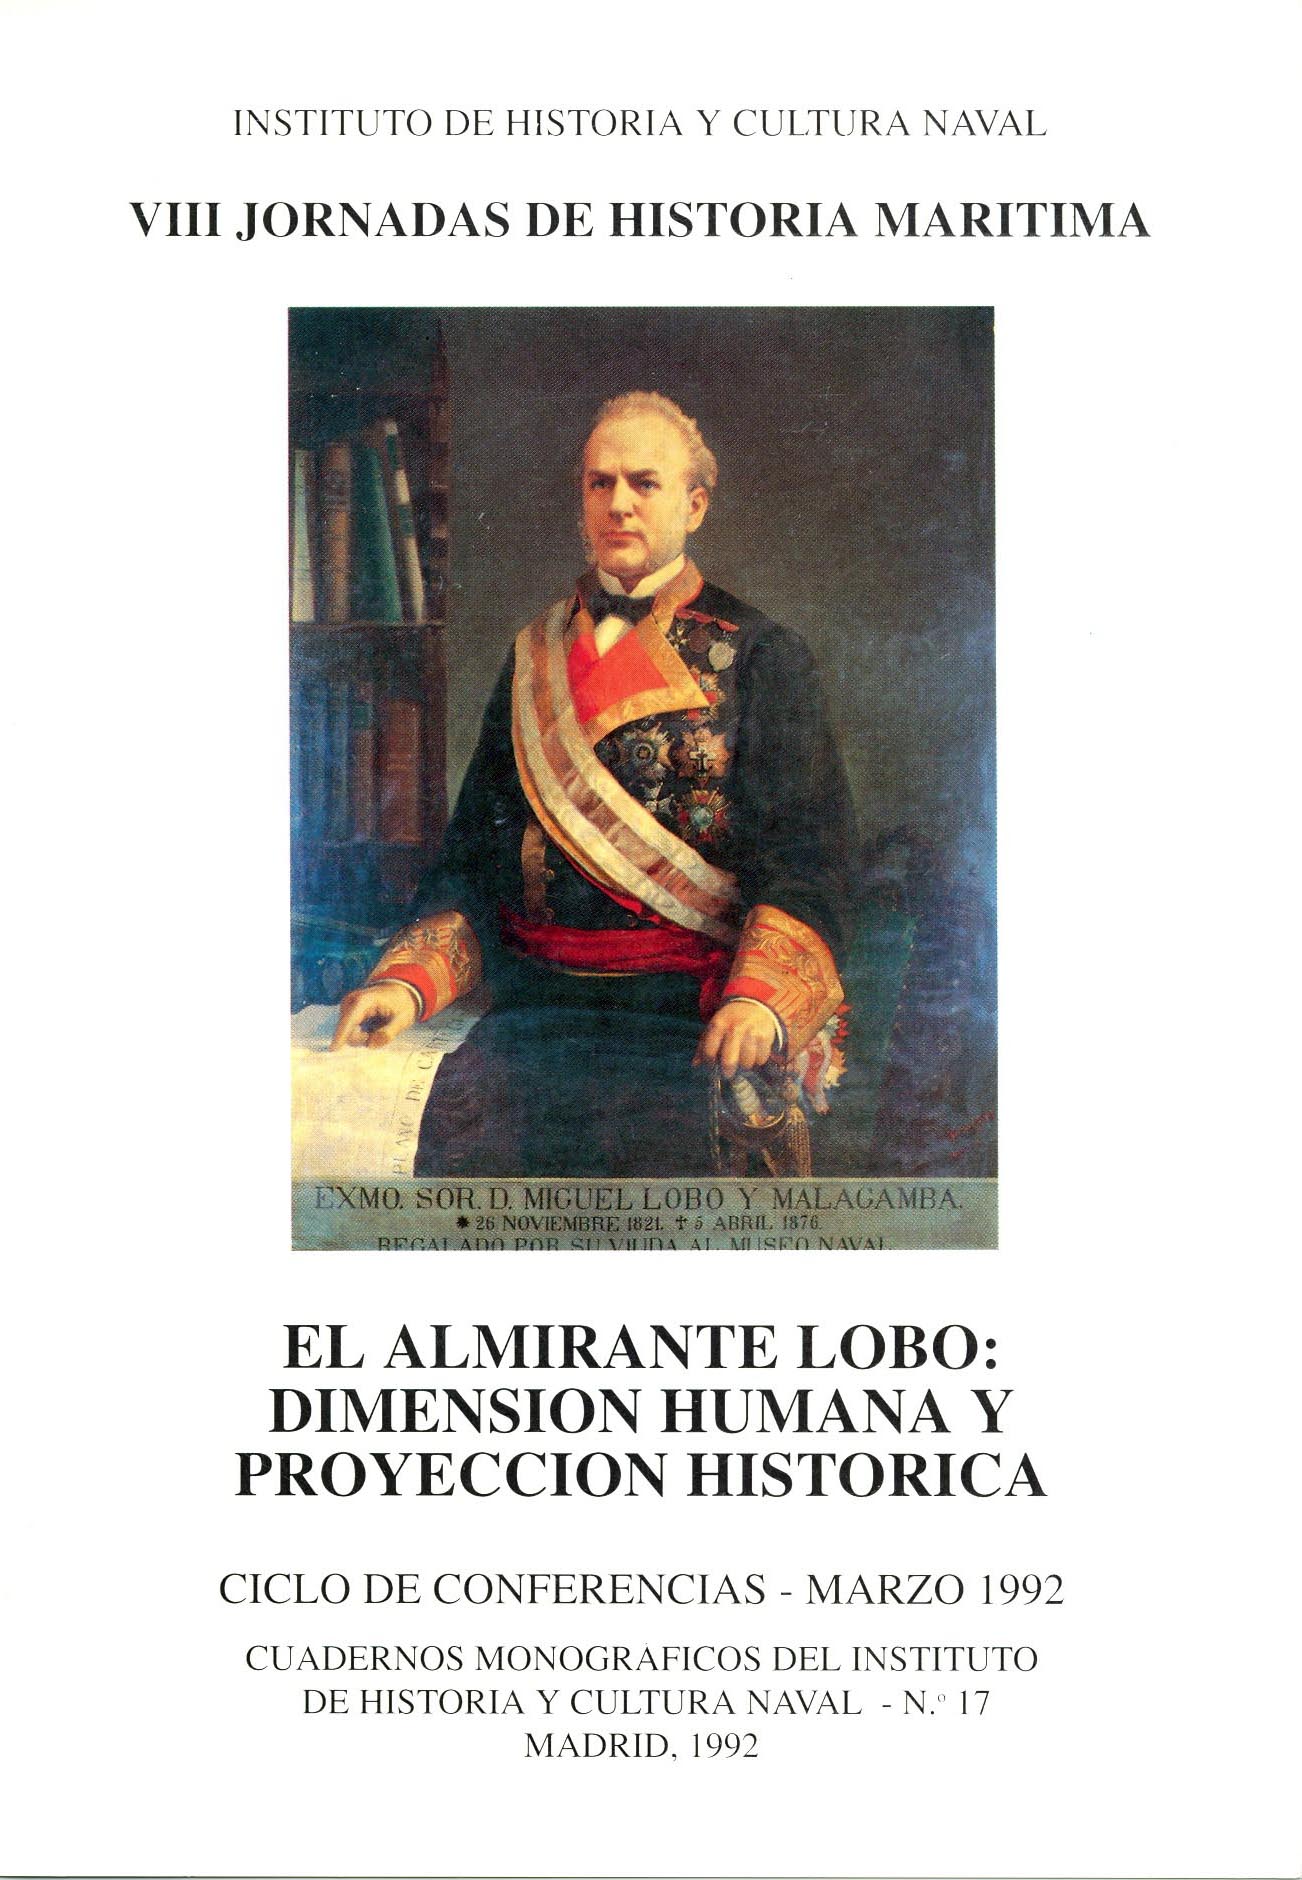 El almirante Lobo: dimensión humana y proyección histórica